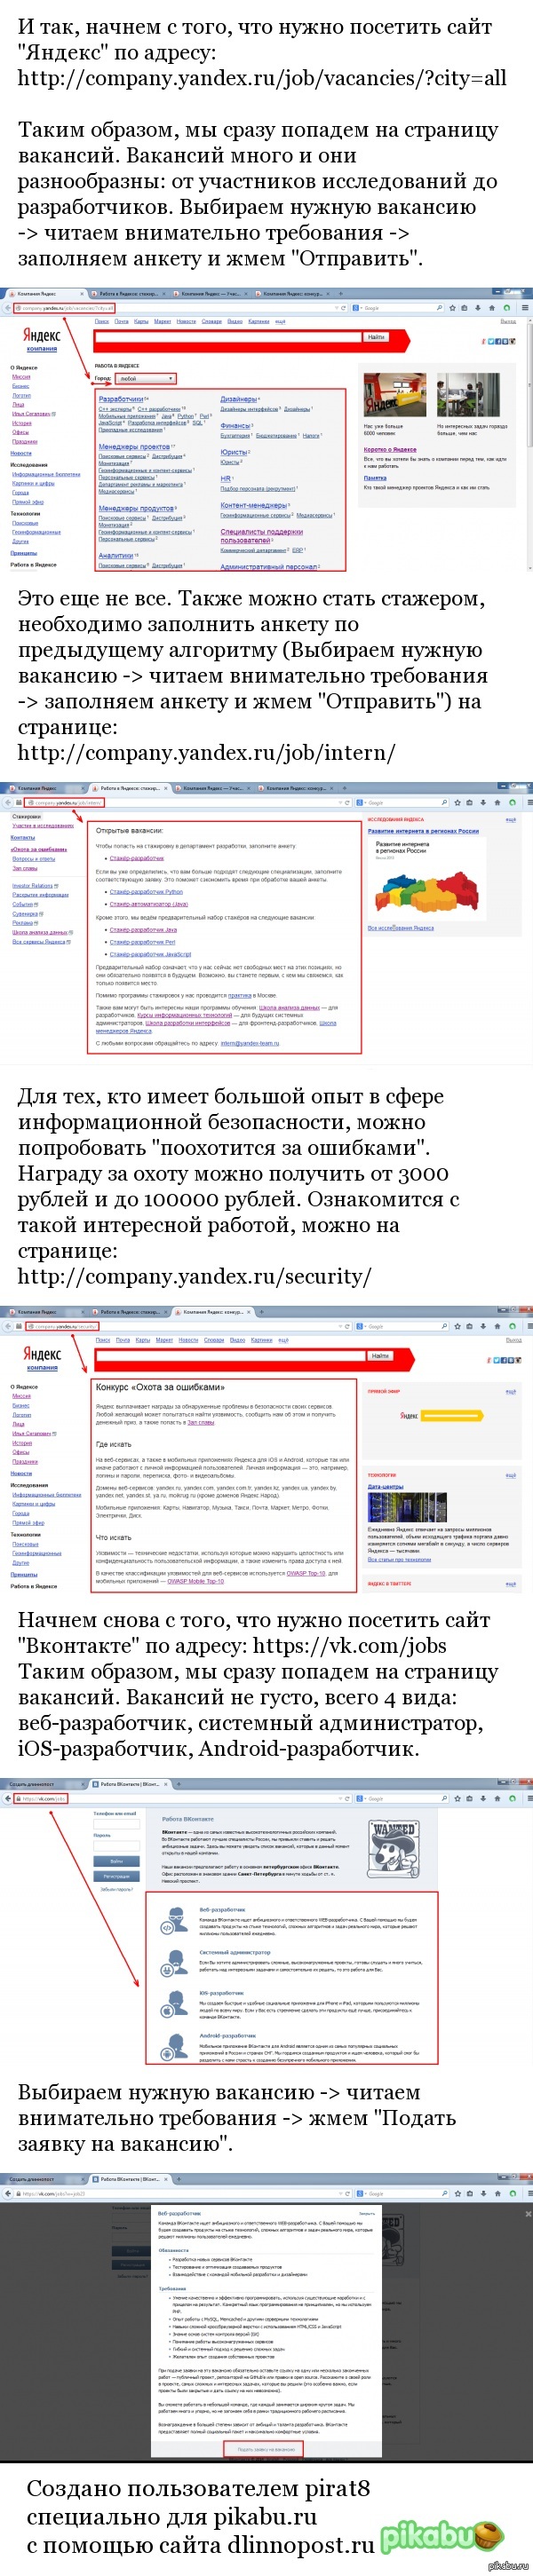 Как устроиться на работу в Яндекс? + бонус (Вконтакте) Сегодня я писал пост: <a href="http://pikabu.ru/story/tam_khotel_byi_rabotat_kazhdyiy_2550719">http://pikabu.ru/story/_2550719</a>   Некоторых он заинтересовал и они хотели бы узнать, как туда устроится.